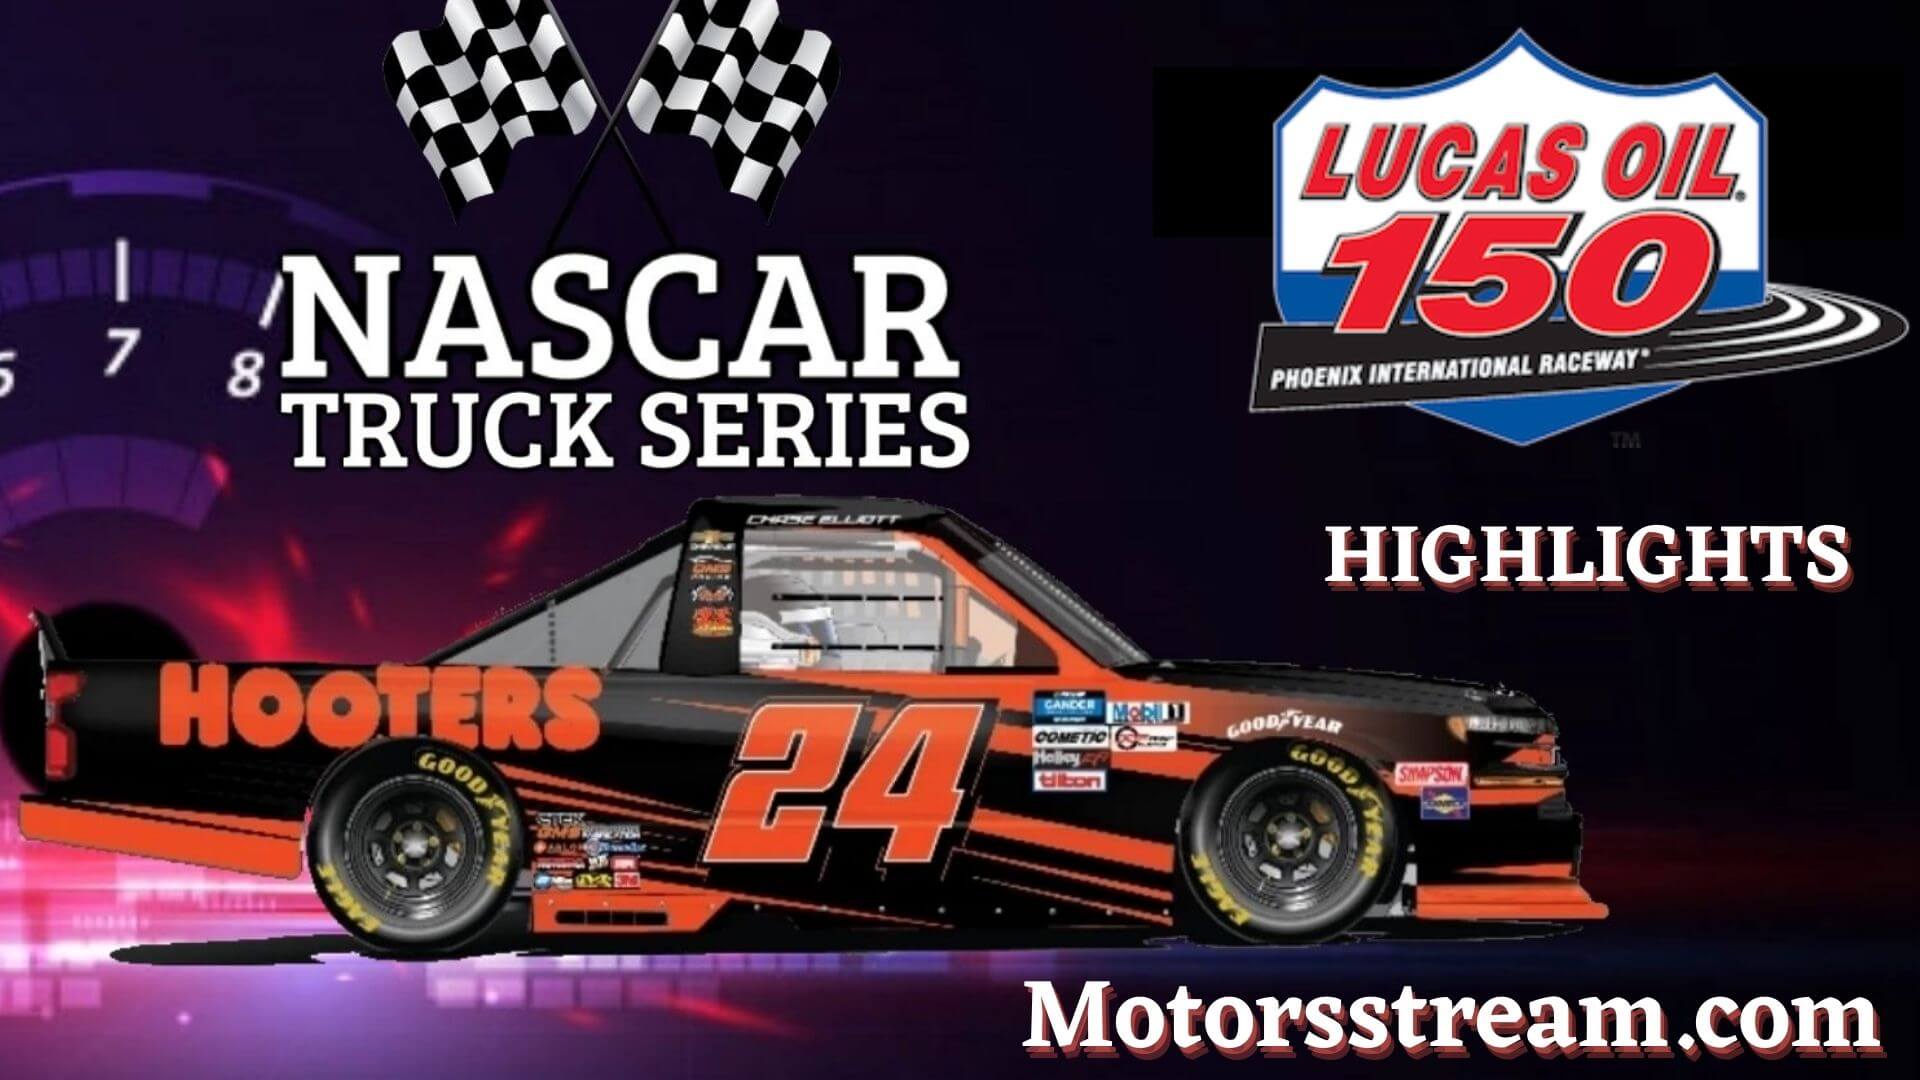 NASCAR Lucas Oil 150 Highlights 2021 Truck Series